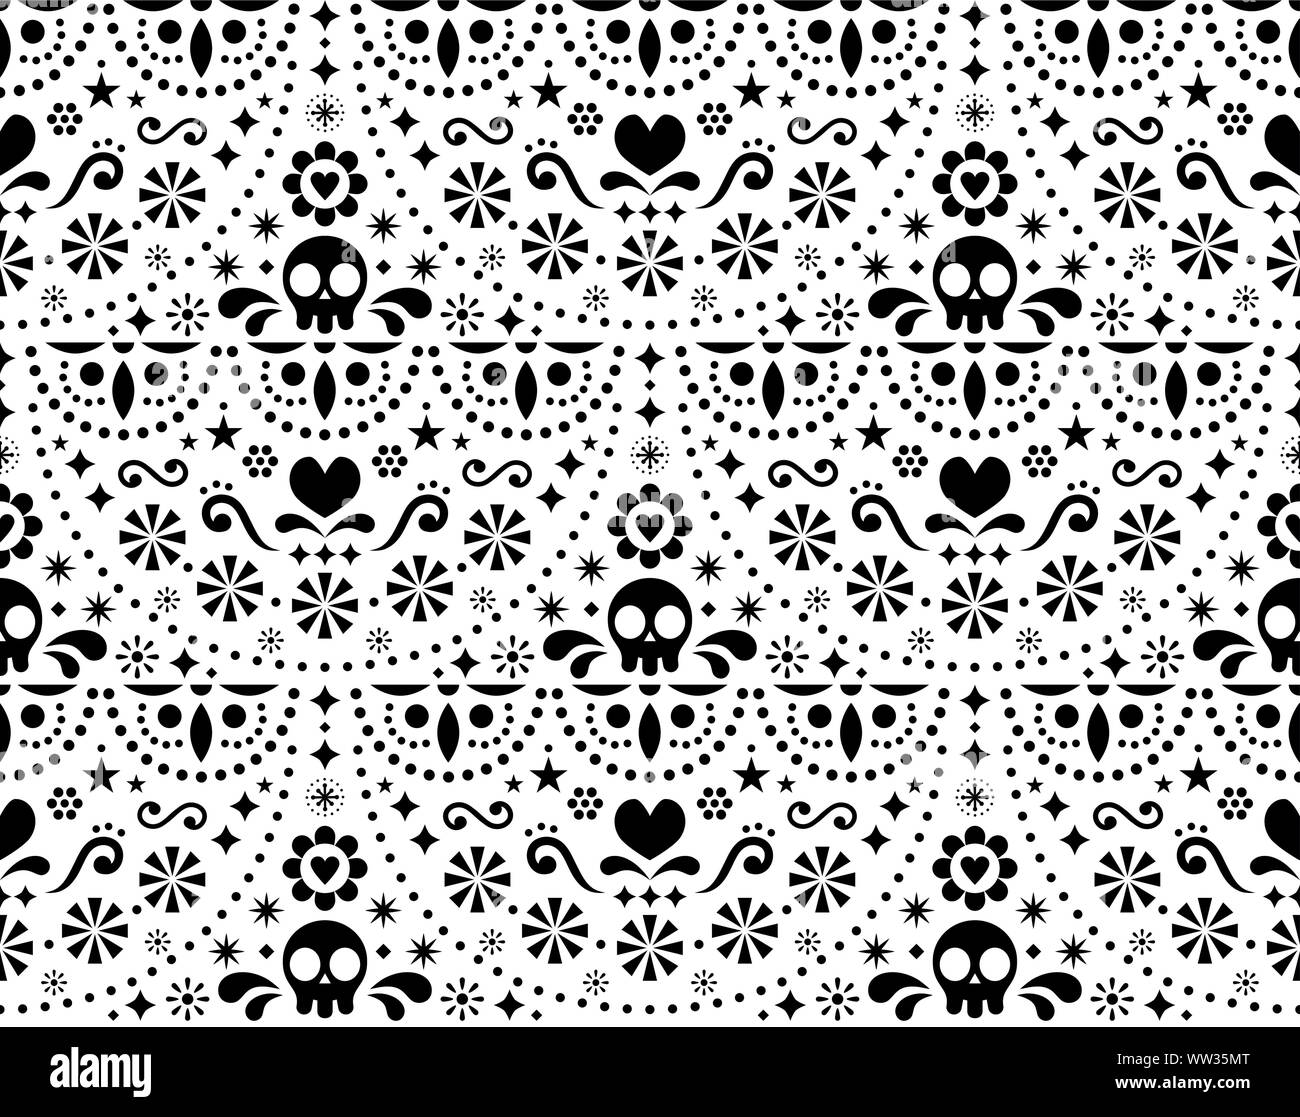 Mexikanischer Volkskunst Vektor nahtlose Muster mit Schädel, Halloween Dekoration, Blumen und abstrakte Formen, Schwarz und Weiß Textil Design Stock Vektor